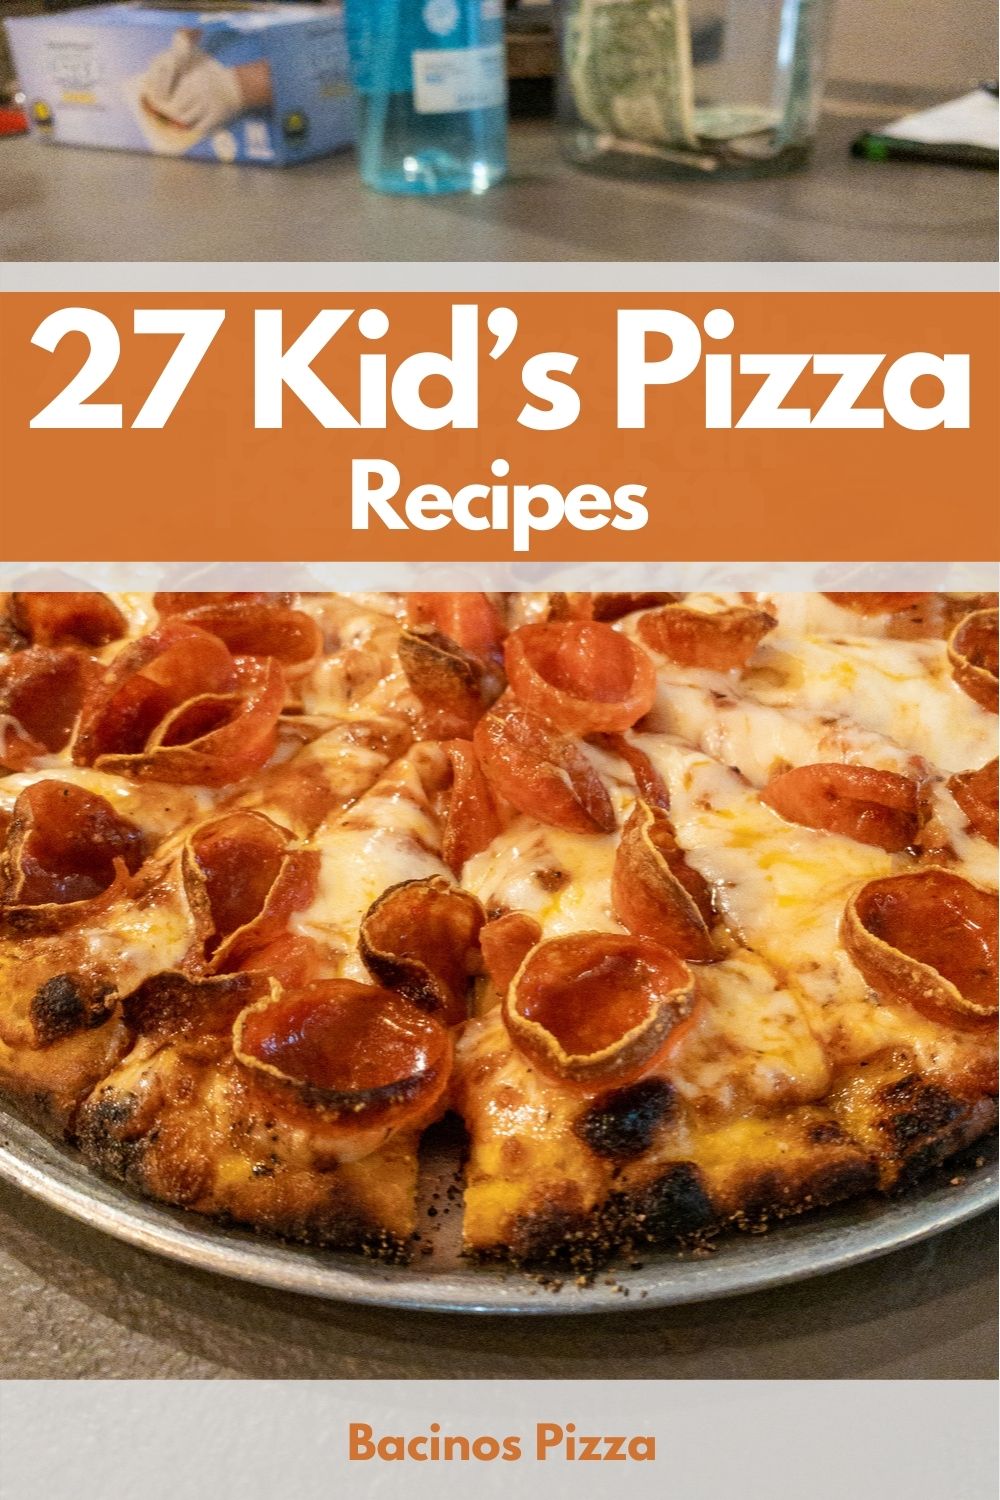 27 Kid’s Pizza Recipes pin